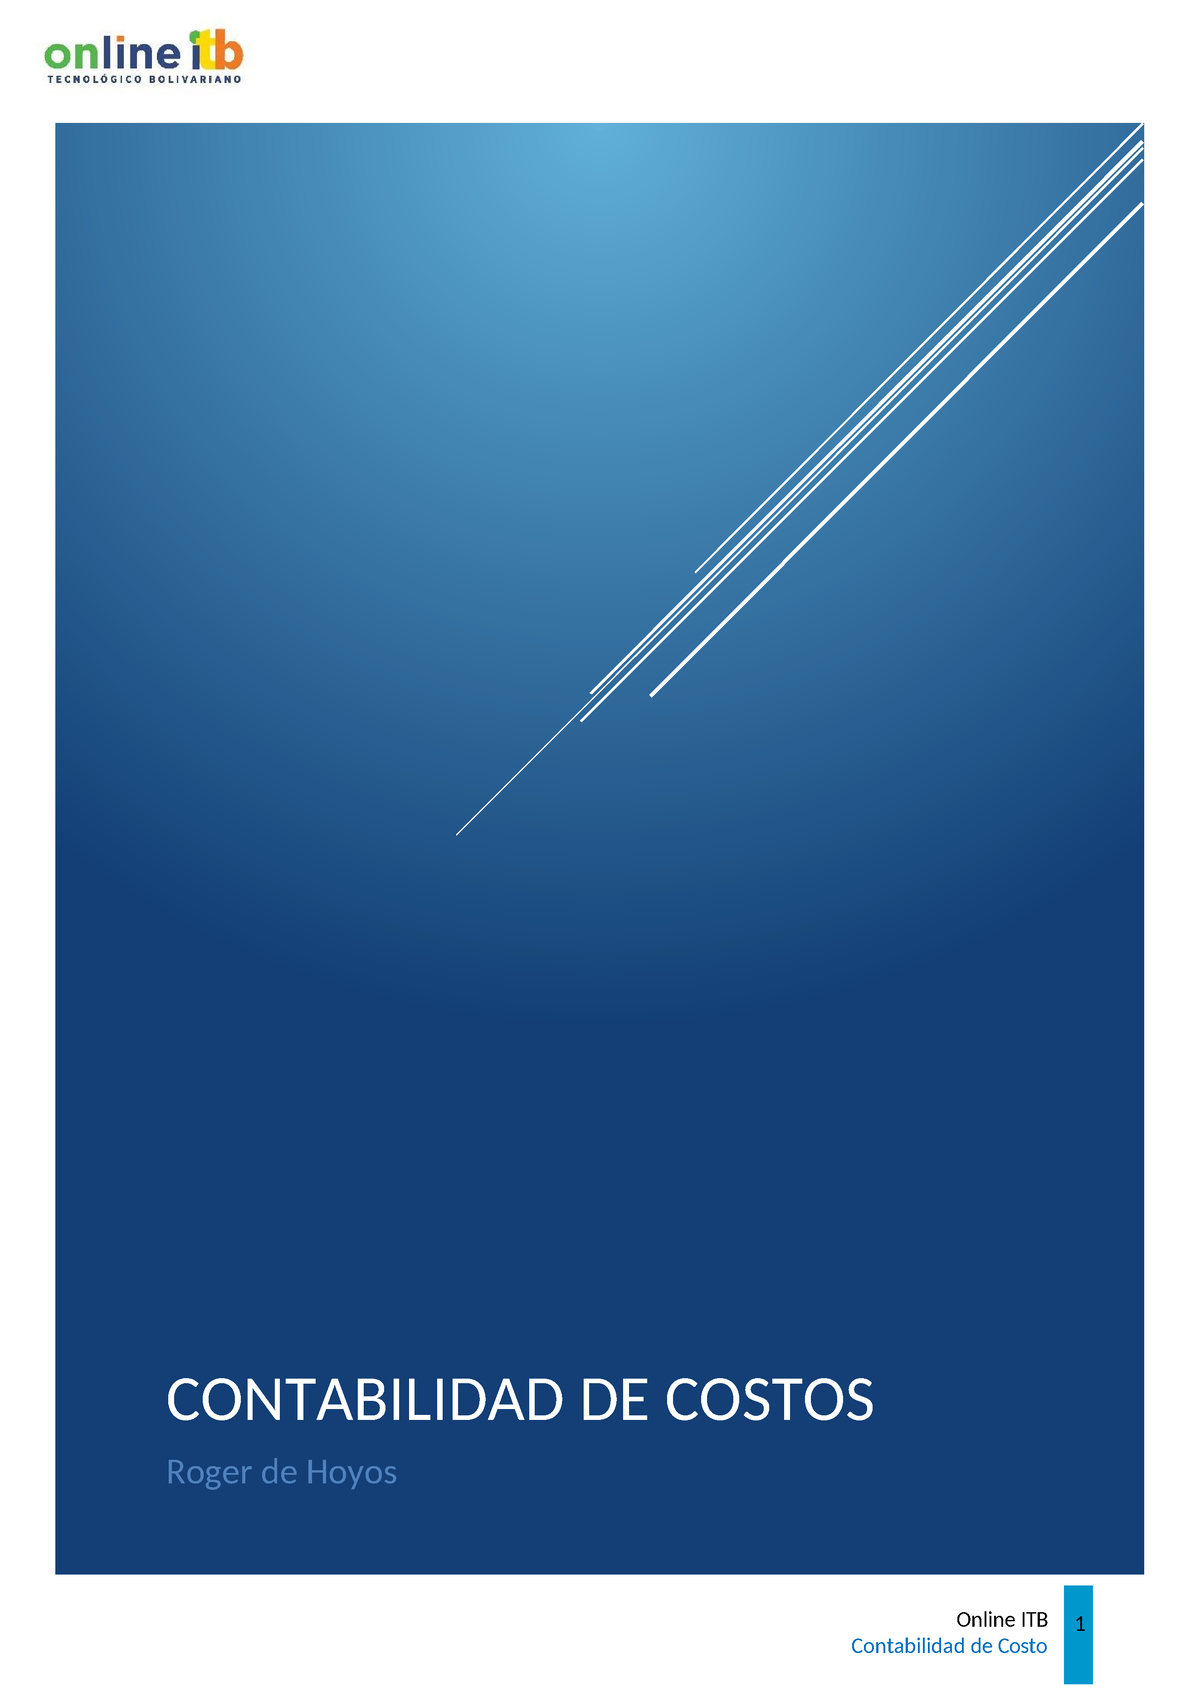 Tarea Virtual 3 Contabilidad De Costos Contabilidad De Costos Roger De Hoyos Online Itb 1 5970